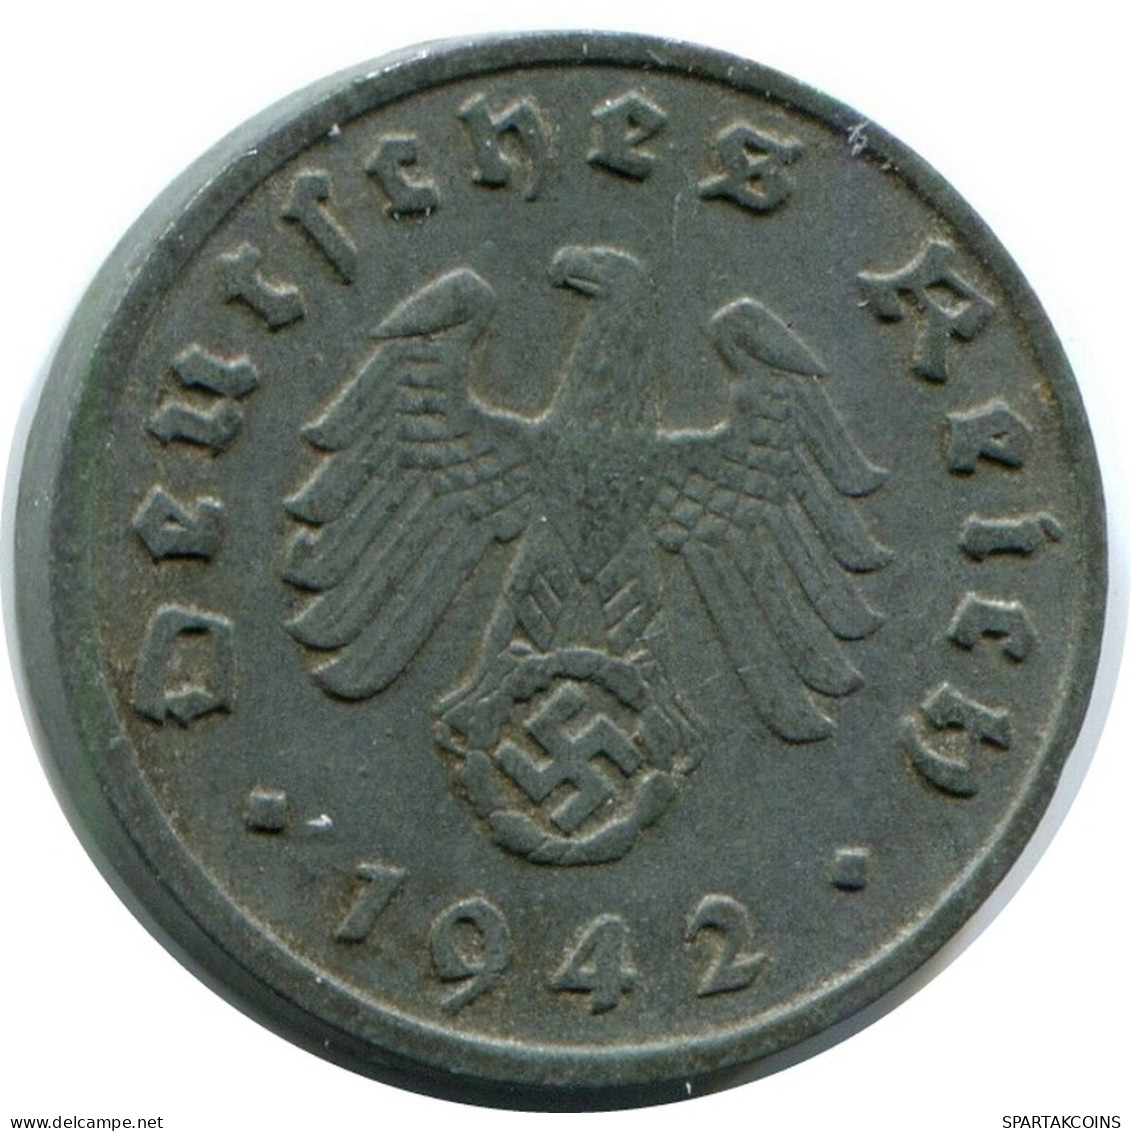 1 REICHSPFENNIG 1942 A DEUTSCHLAND Münze GERMANY #AX398.D.A - 1 Reichspfennig